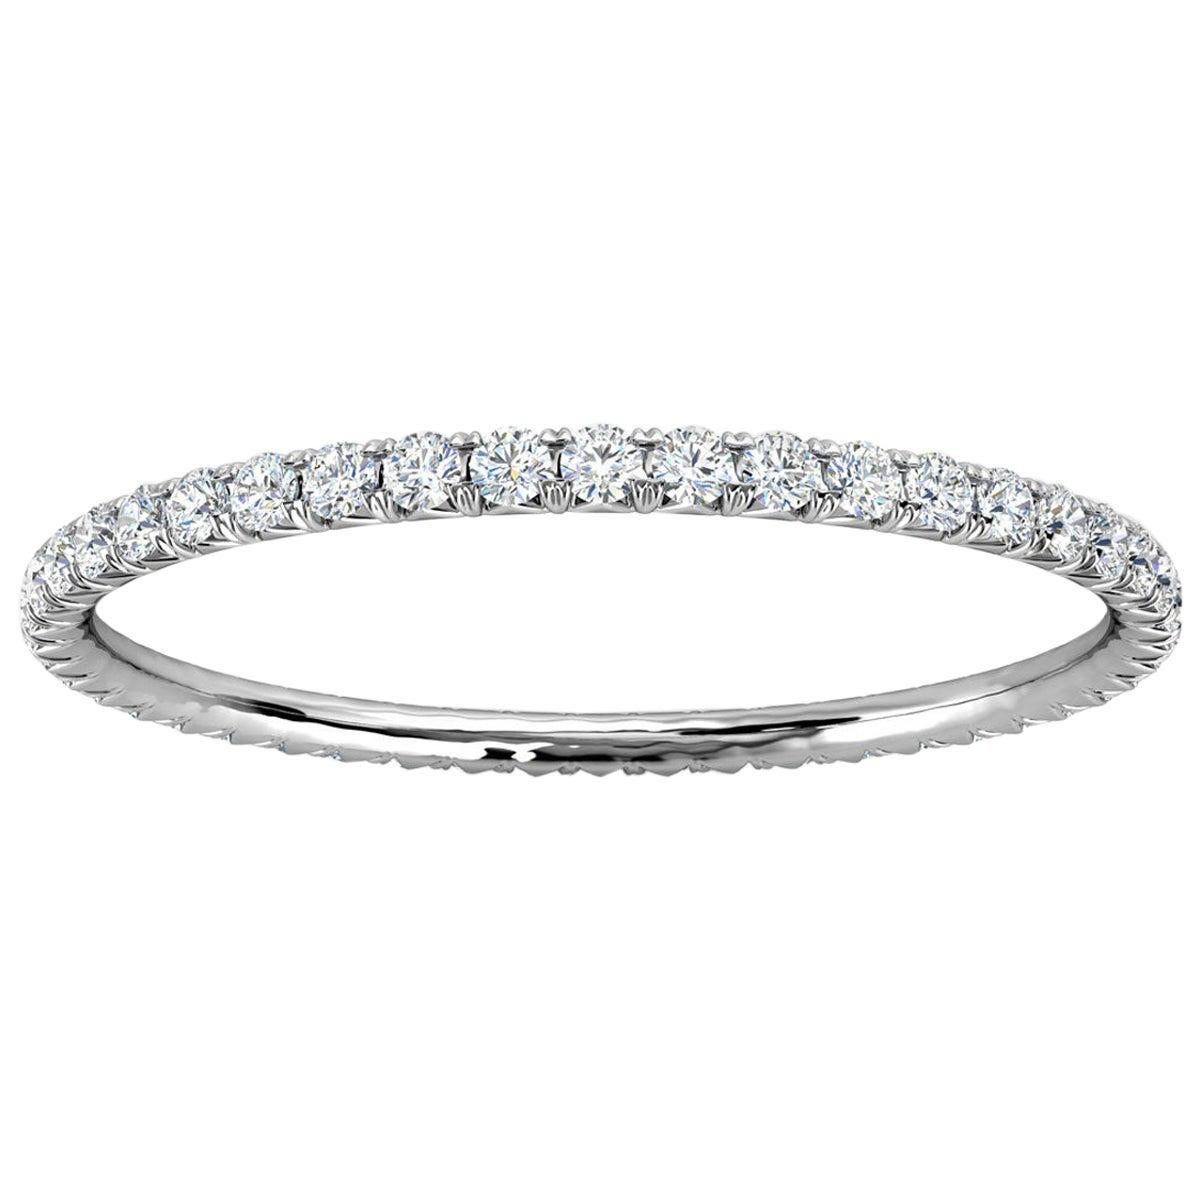 14K White Gold Mia Petite French Pave Diamond Eternity Ring '1/4 Ct. tw'